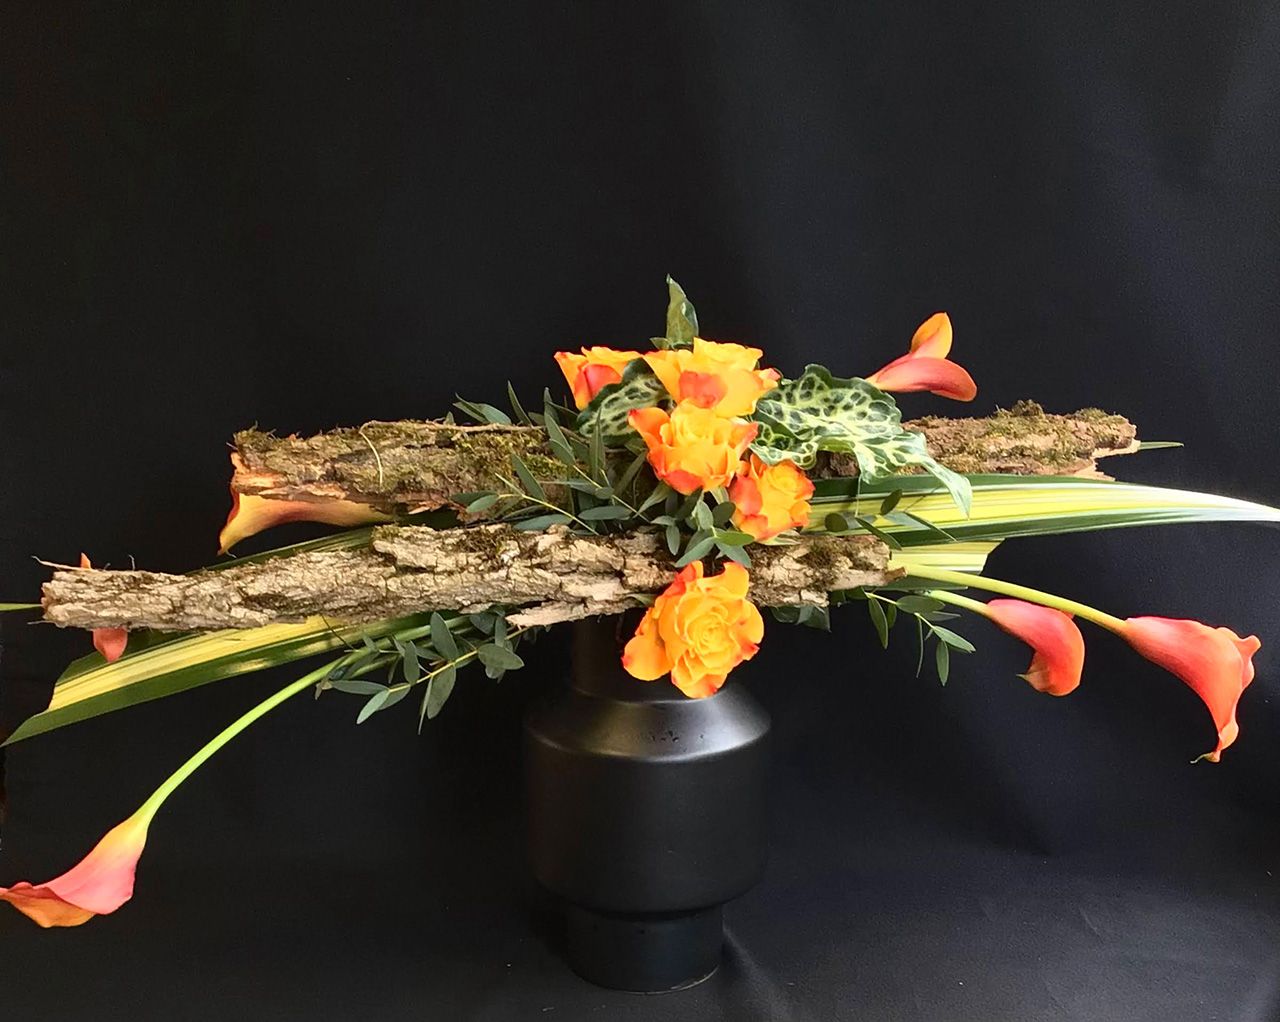 SCHN - Activités - Atelier d'art floral - Création "Lignes horizontales"